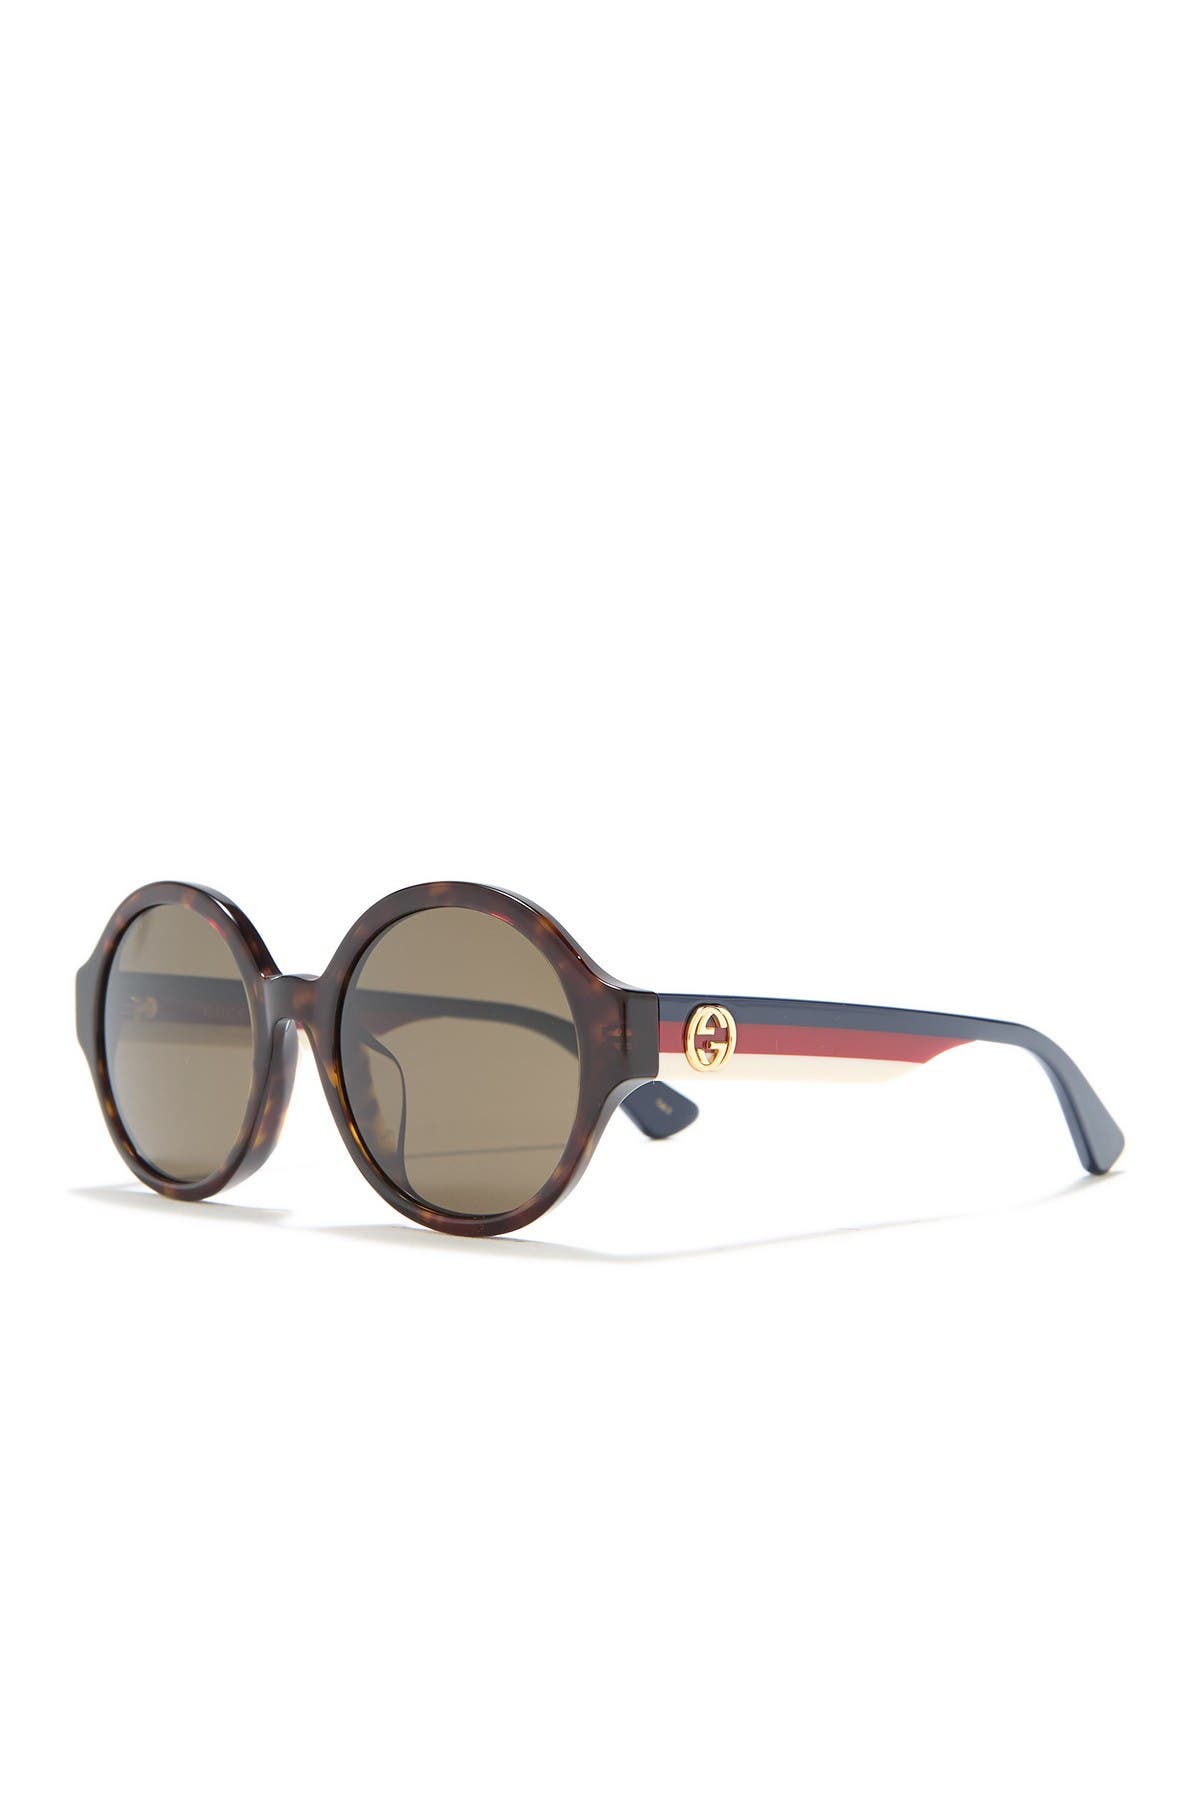 gucci 51mm round sunglasses